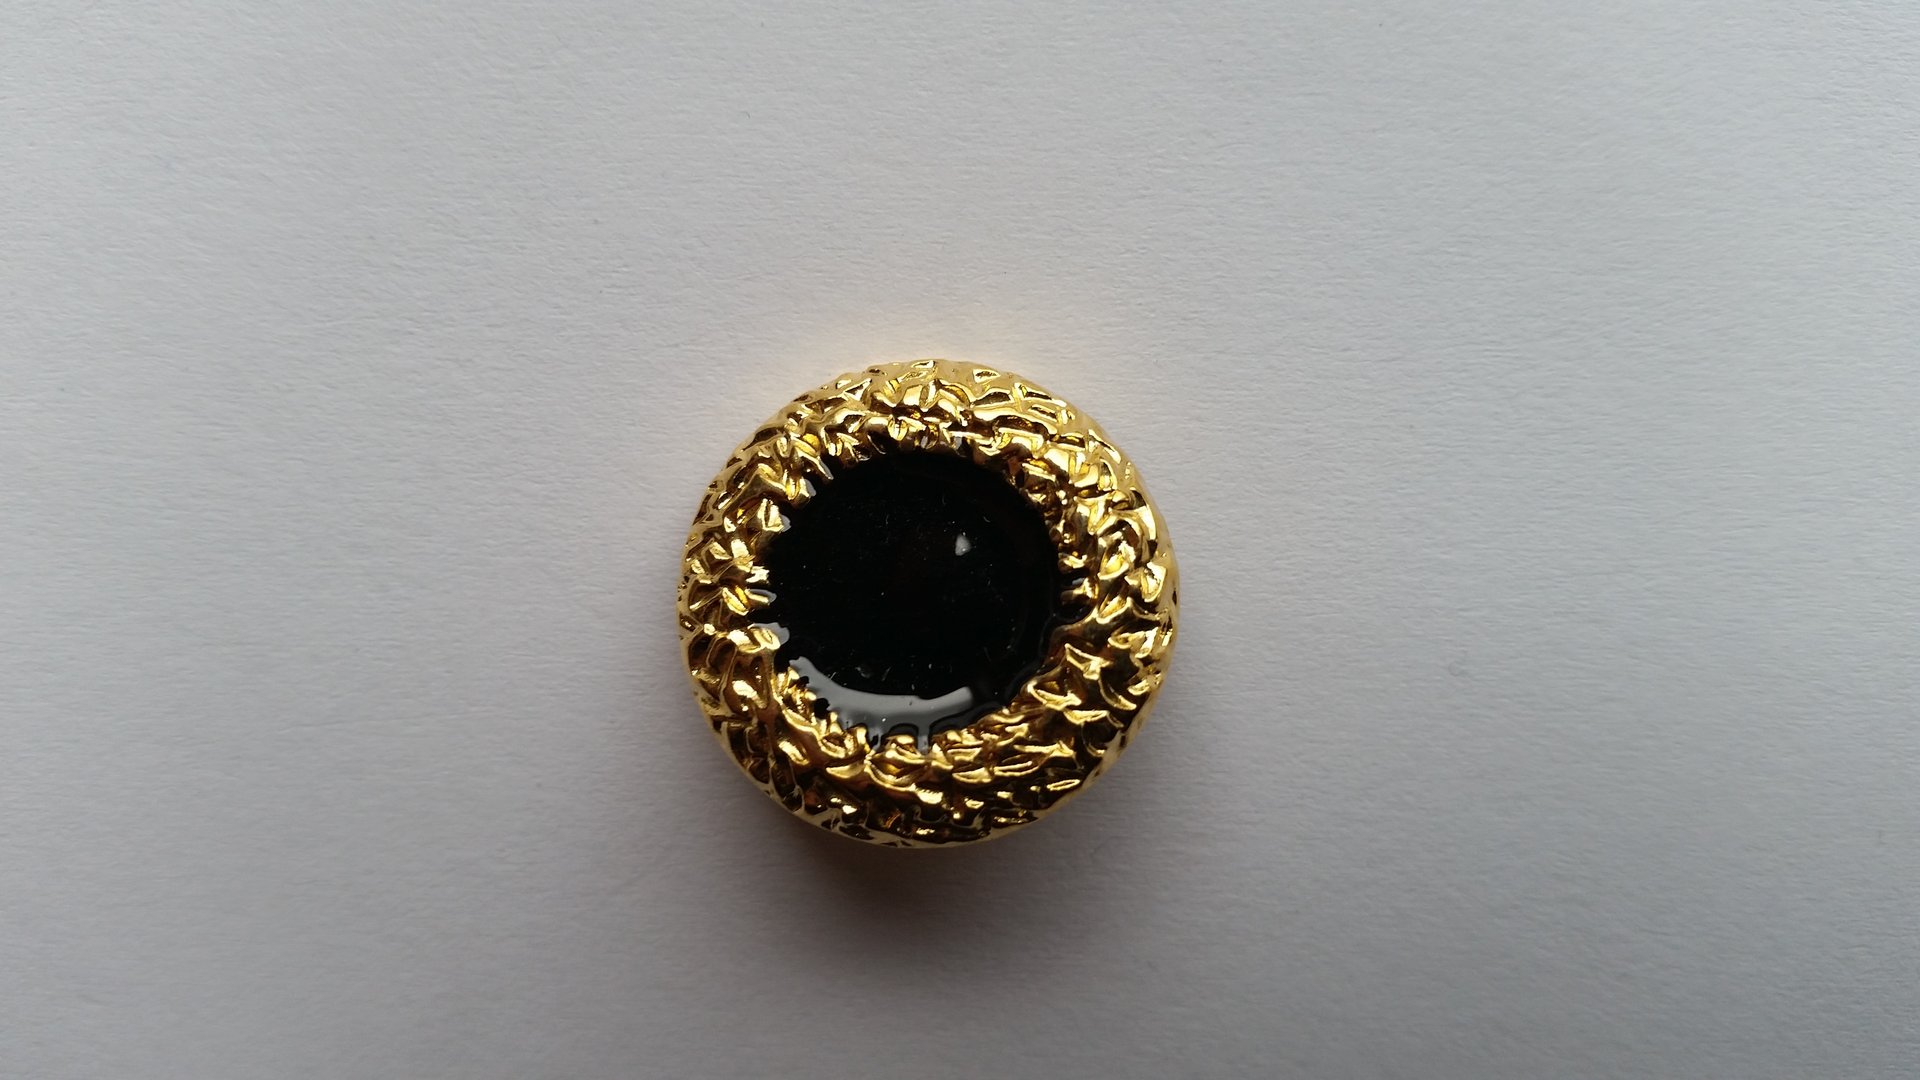 Goldener Metallknopf im Durchmesser von 22 mm